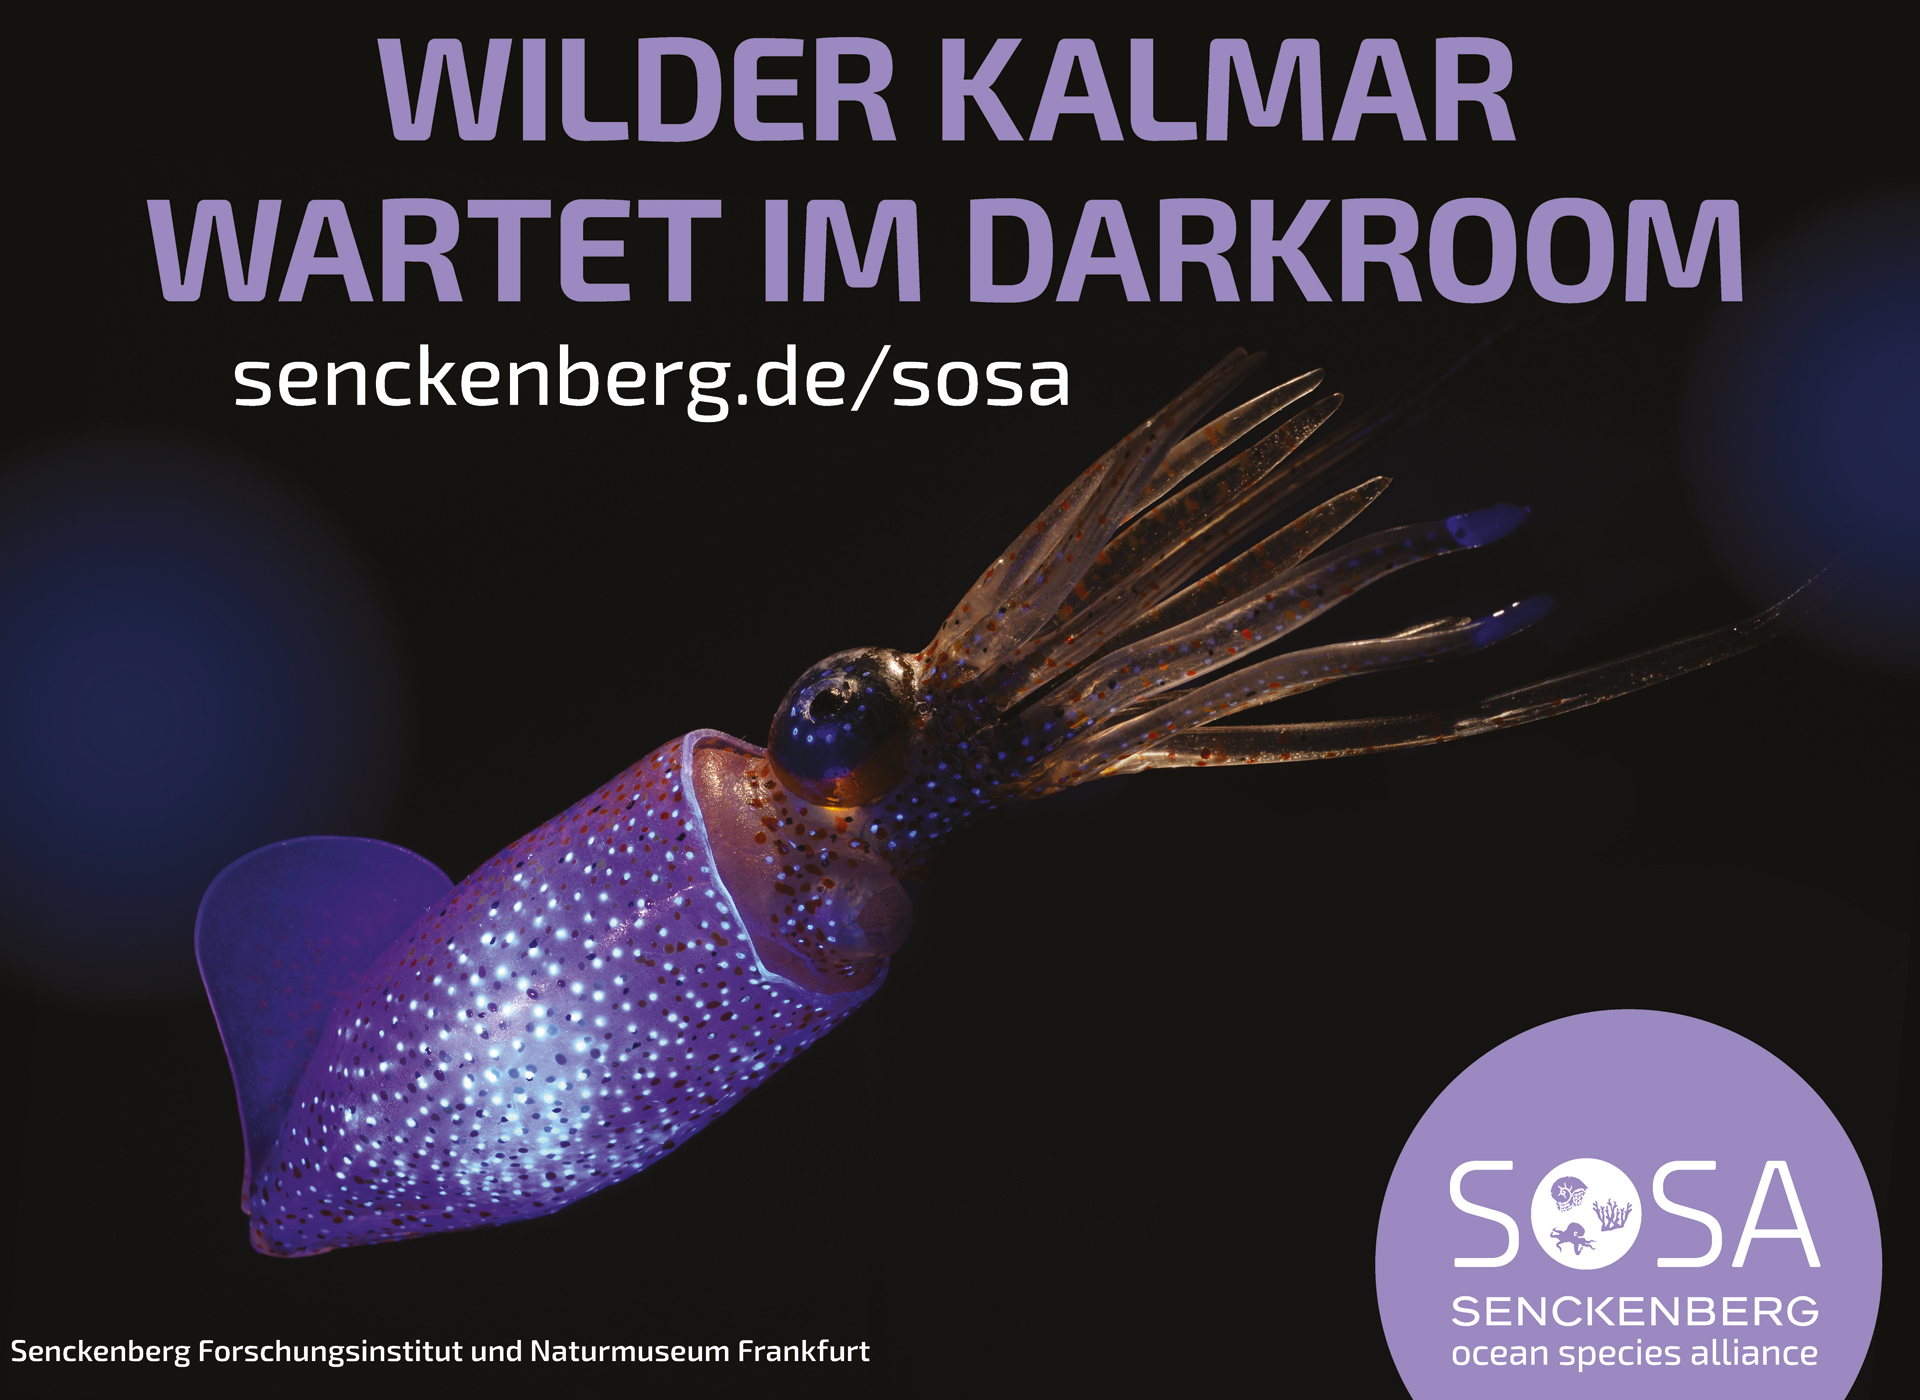 In der Tiefseeausstellung – dem „Darkroom“ des Senckenberg Naturmuseums Frankfurt – kann man eintauchen in eine Welt ohne Licht. Durch Biolumineszenz machen Meereslebewesen dort auf sich aufmerksam. Bild: Senckenberg